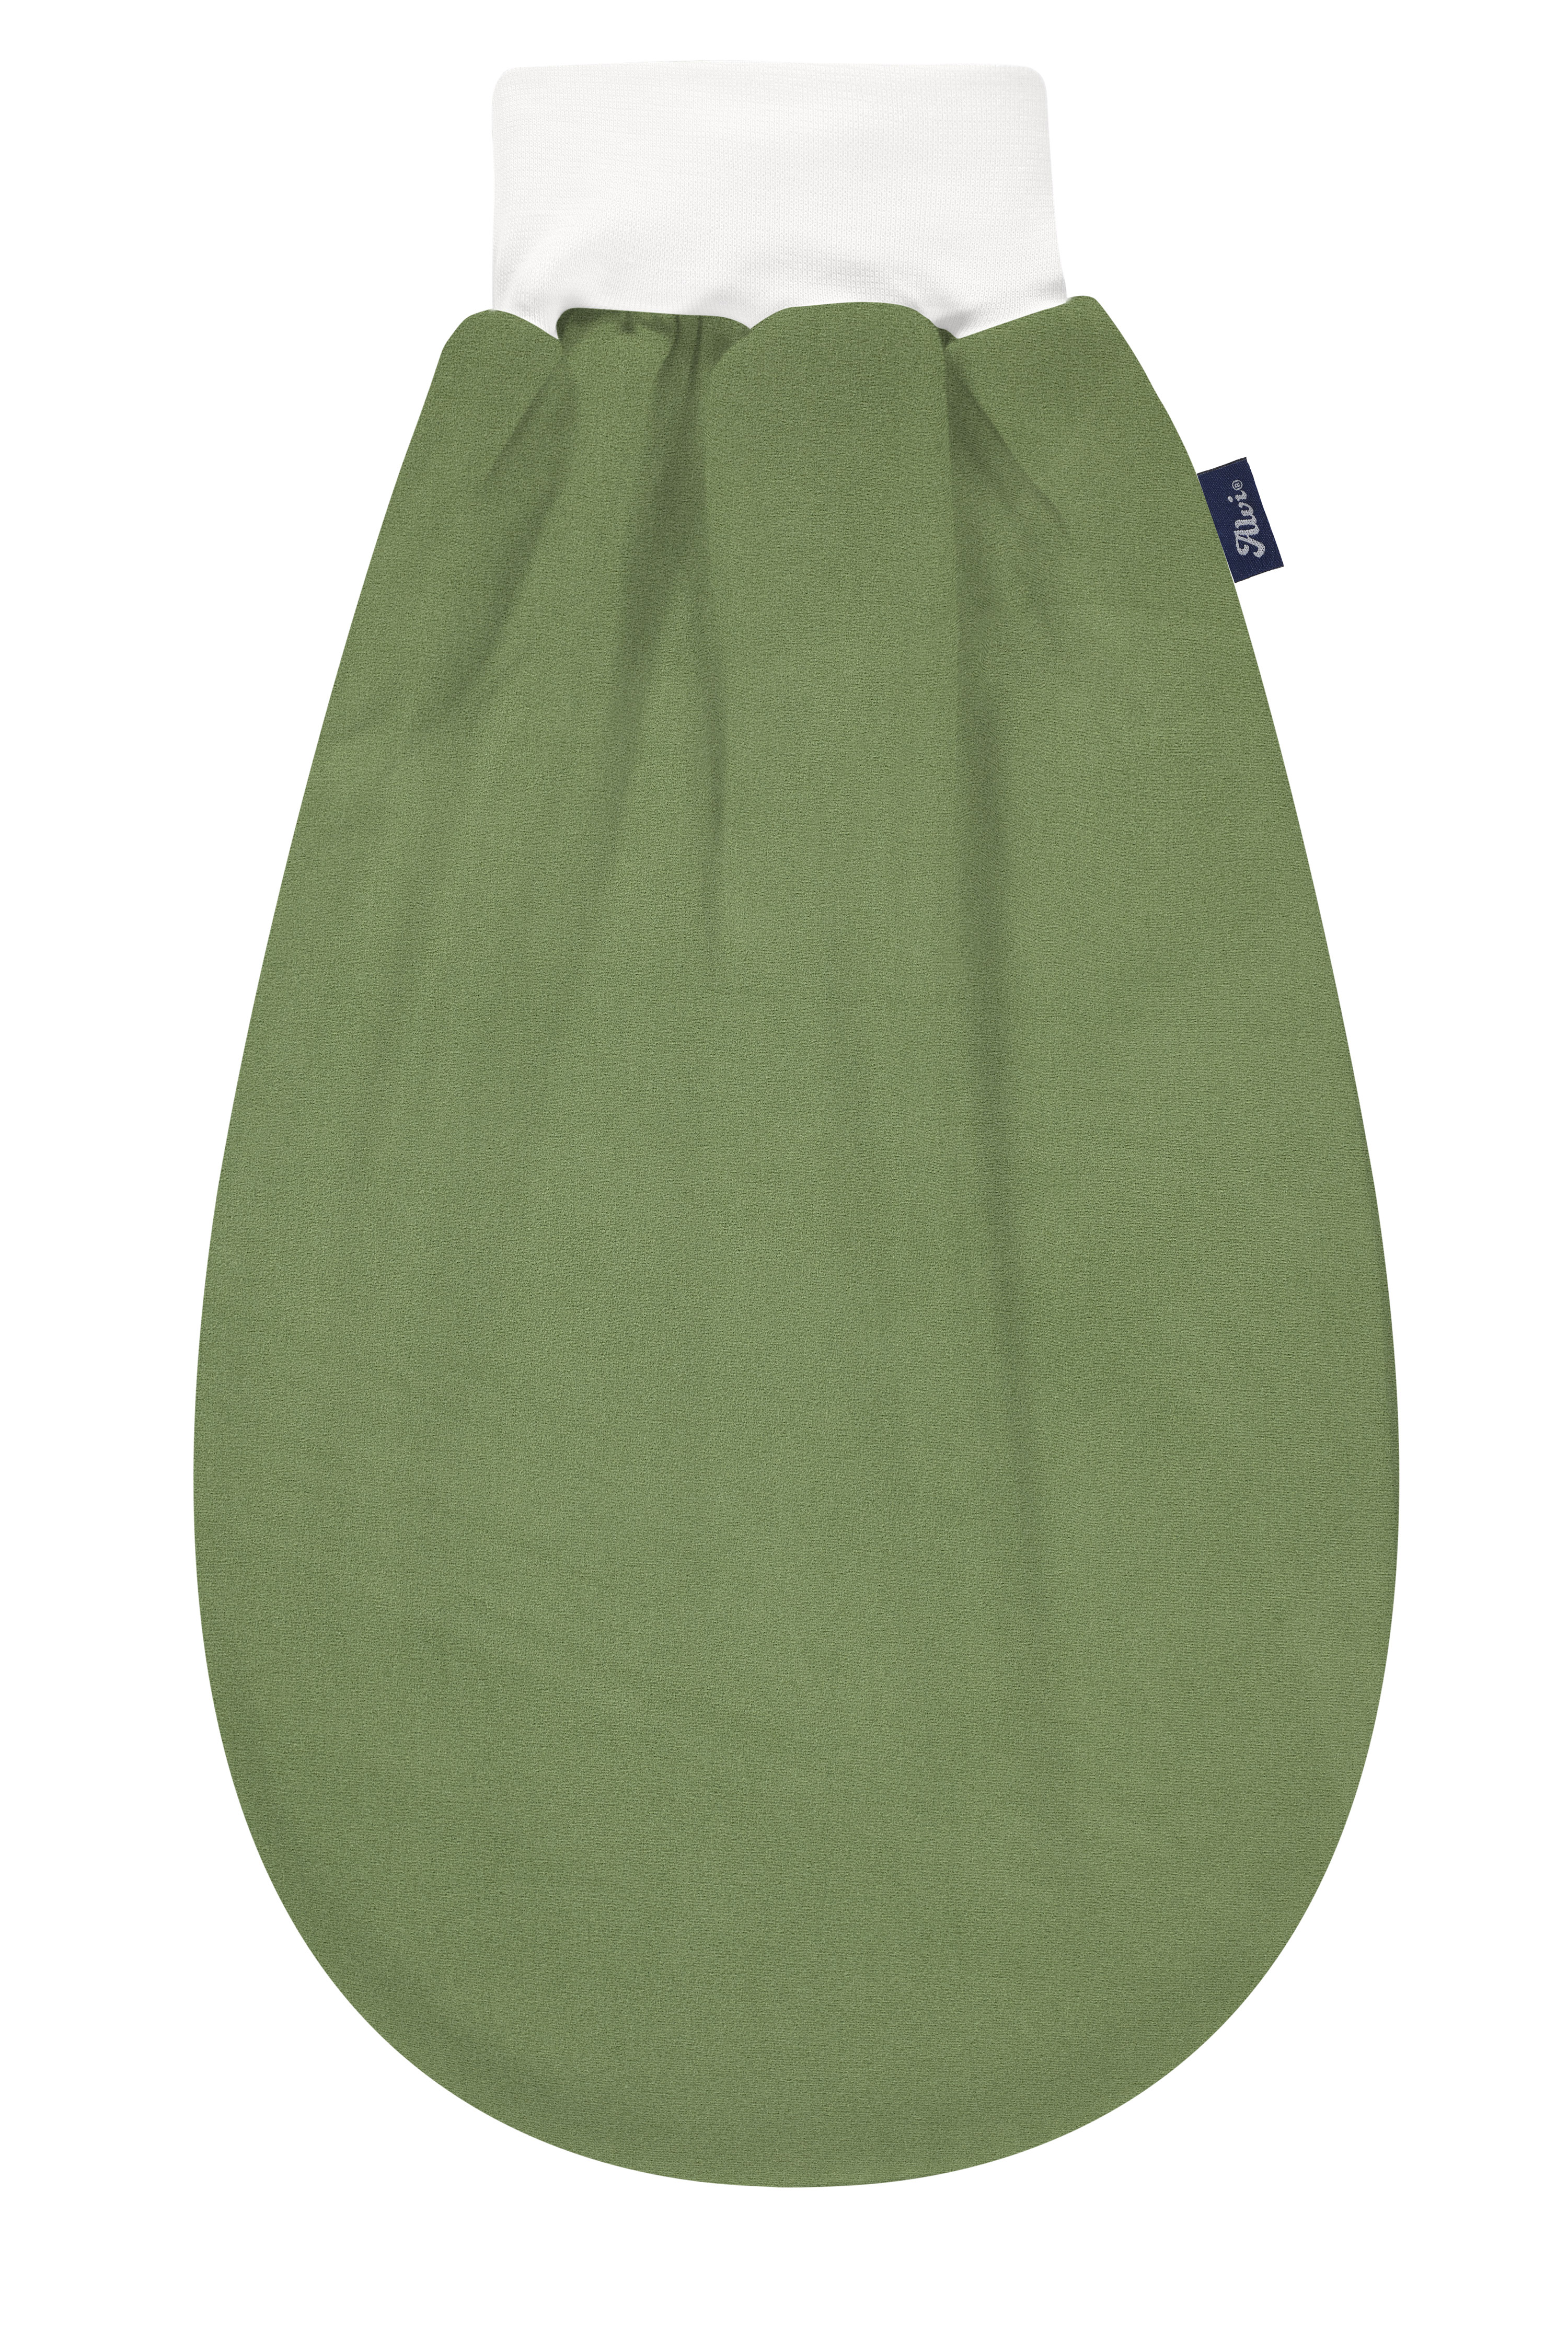 Alvi ® Slip-on Mäxchen Light Special Fabric Felpa Nap green